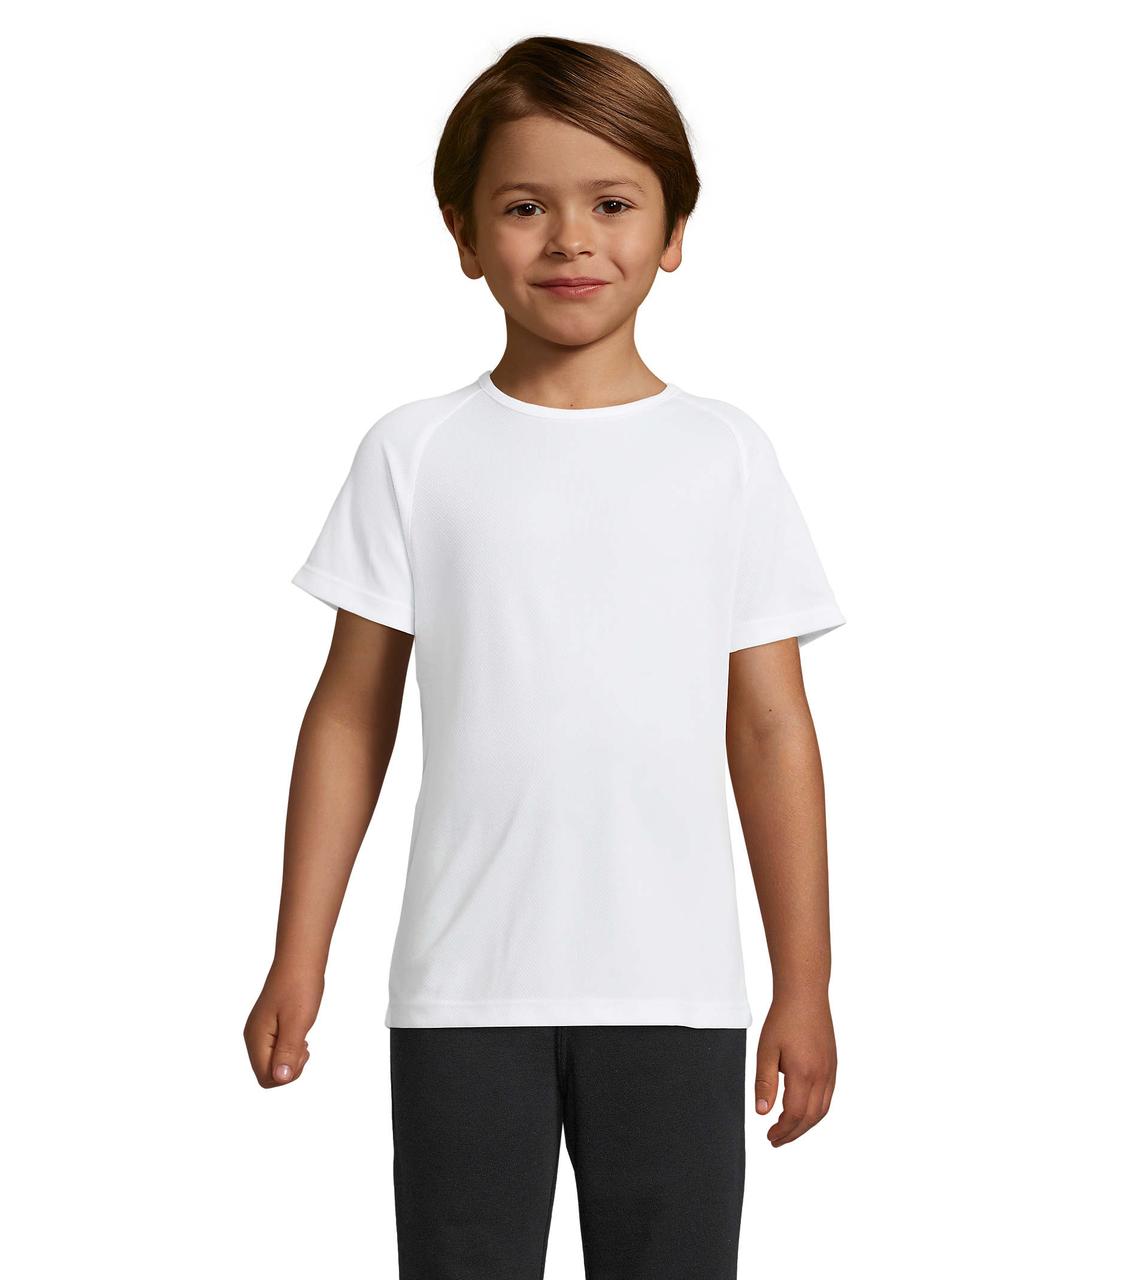 Дитяча спортивна футболка, білий, SOL’S SPORTY KIDS від 6 до 12 років